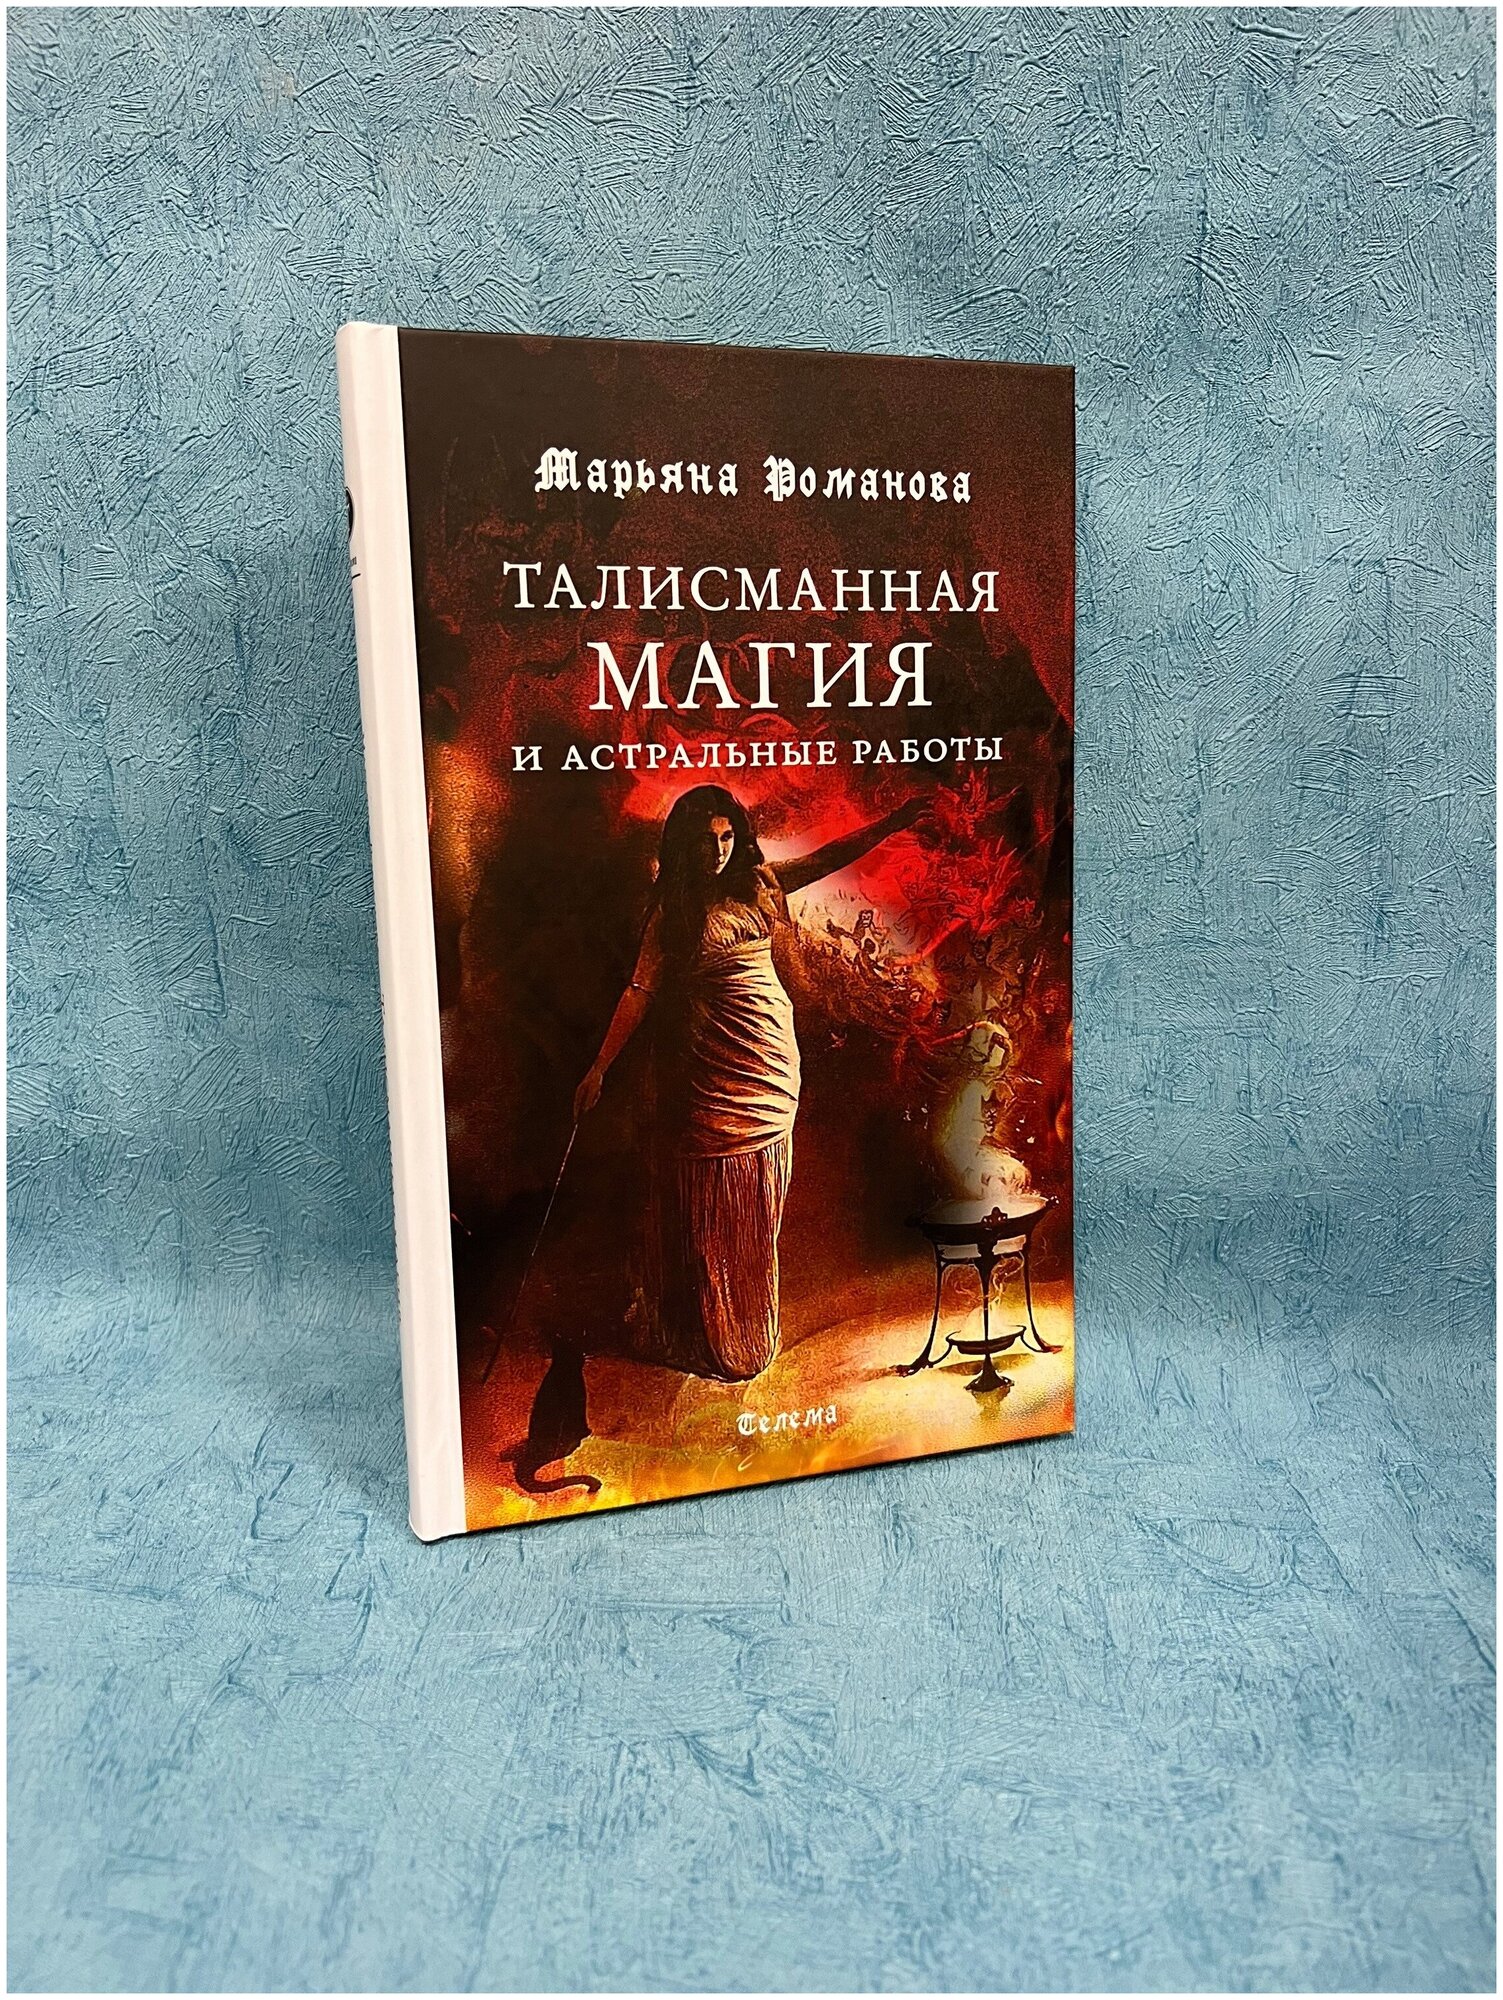 Книга Марьяна Романова "Талисманная магия и астральные работы"